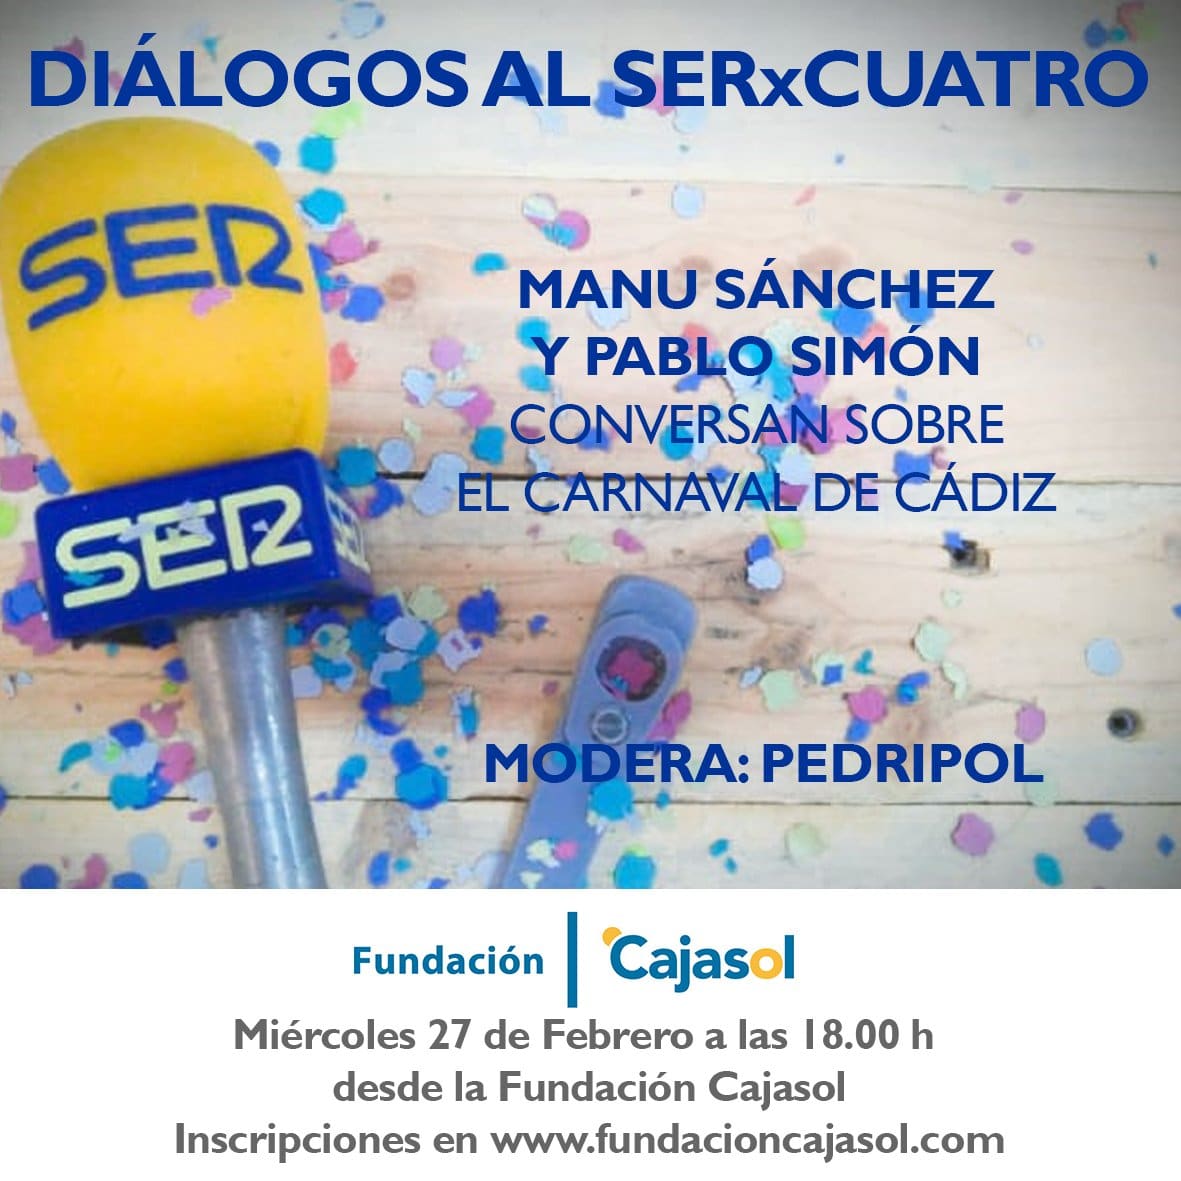 Cartel de los Diálogos al SERxCuatro con Manu Sánchez y Pablo Simón en la Fundación Cajasol